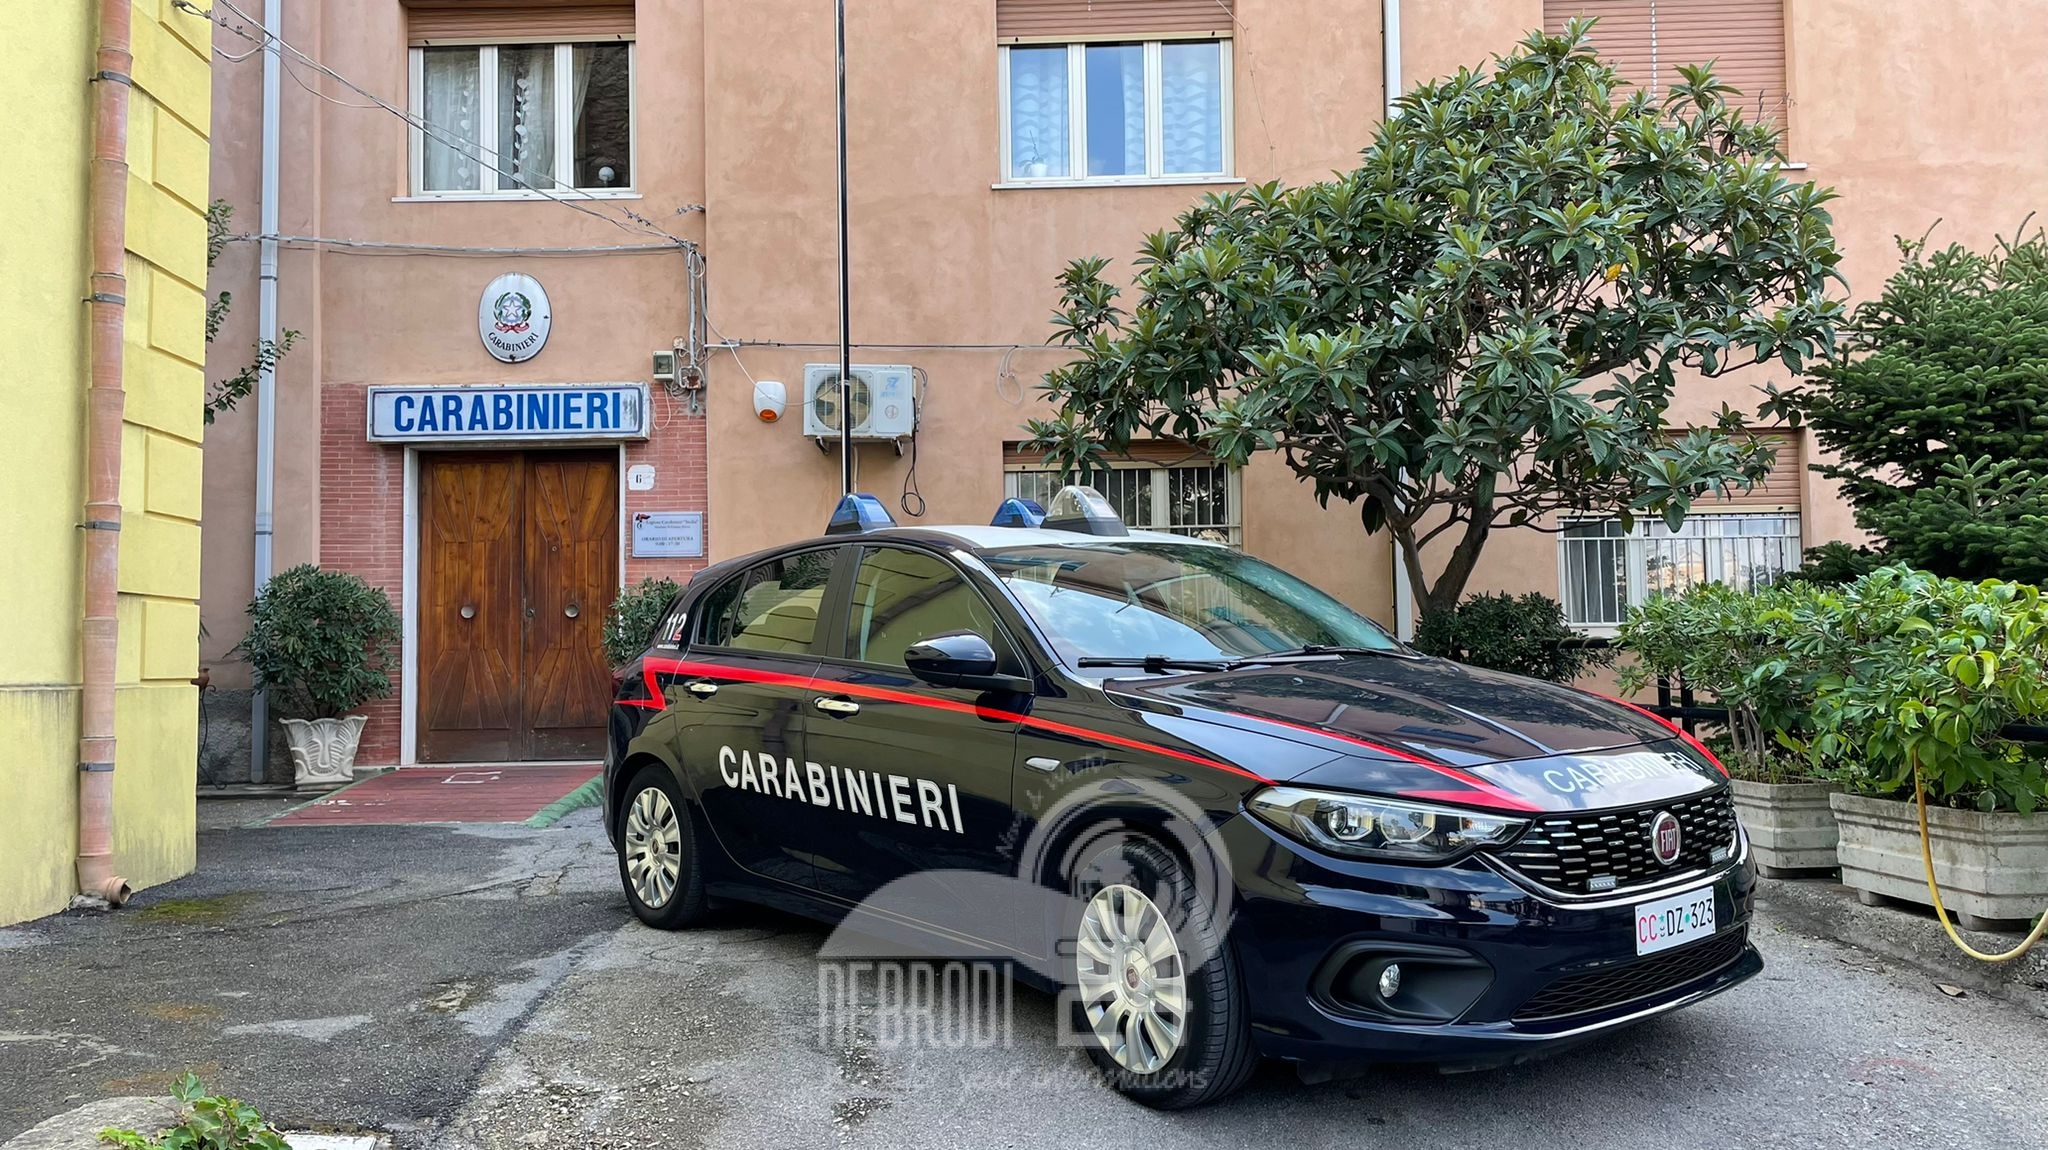 Gioiosa Marea – Appicca un incendio presso l’abitazione occupata dai familiari. Arrestato dai Carabinieri.